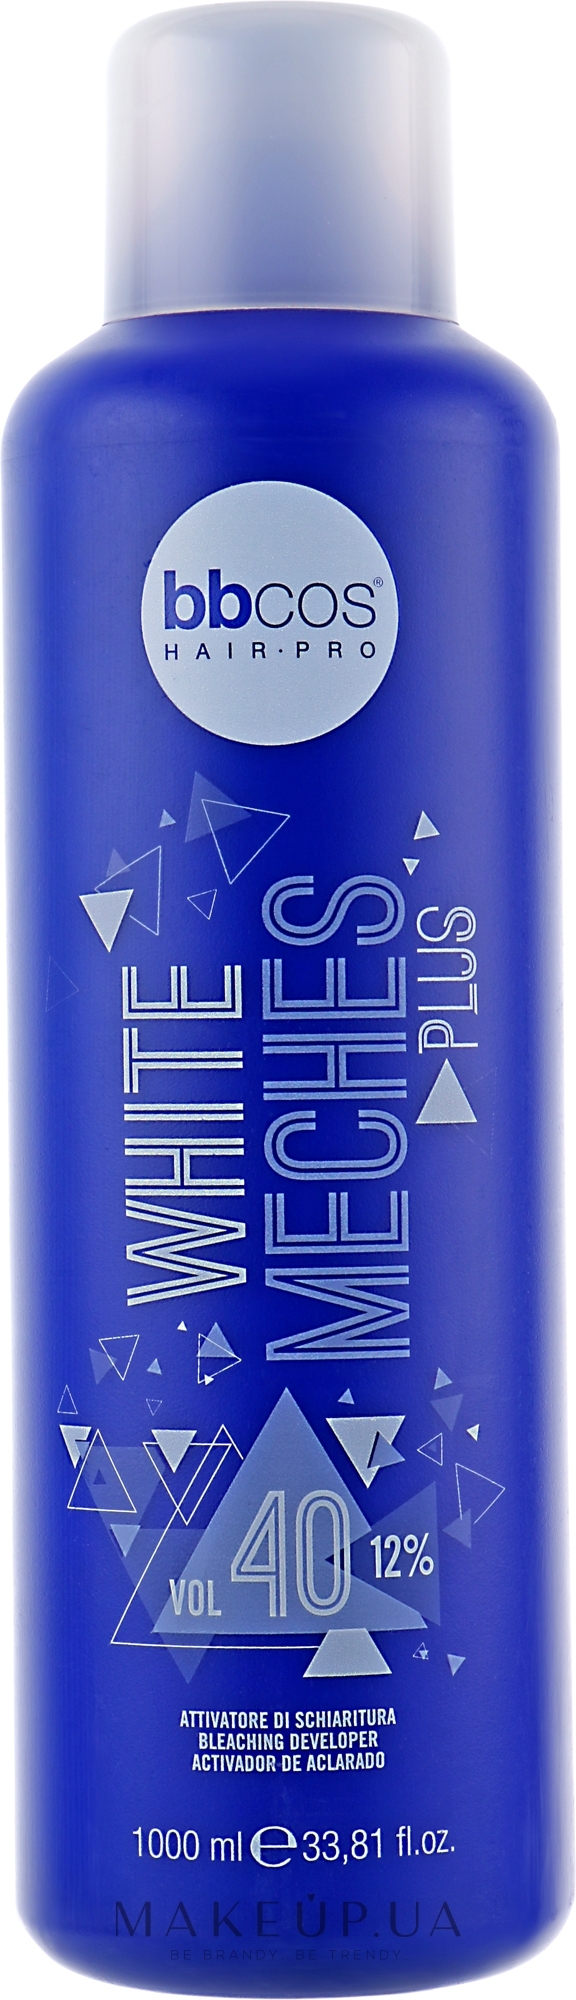 Окислювач для освітленння волосся 12% - BBcos White Meches Plus 40 Vol — фото 1000ml